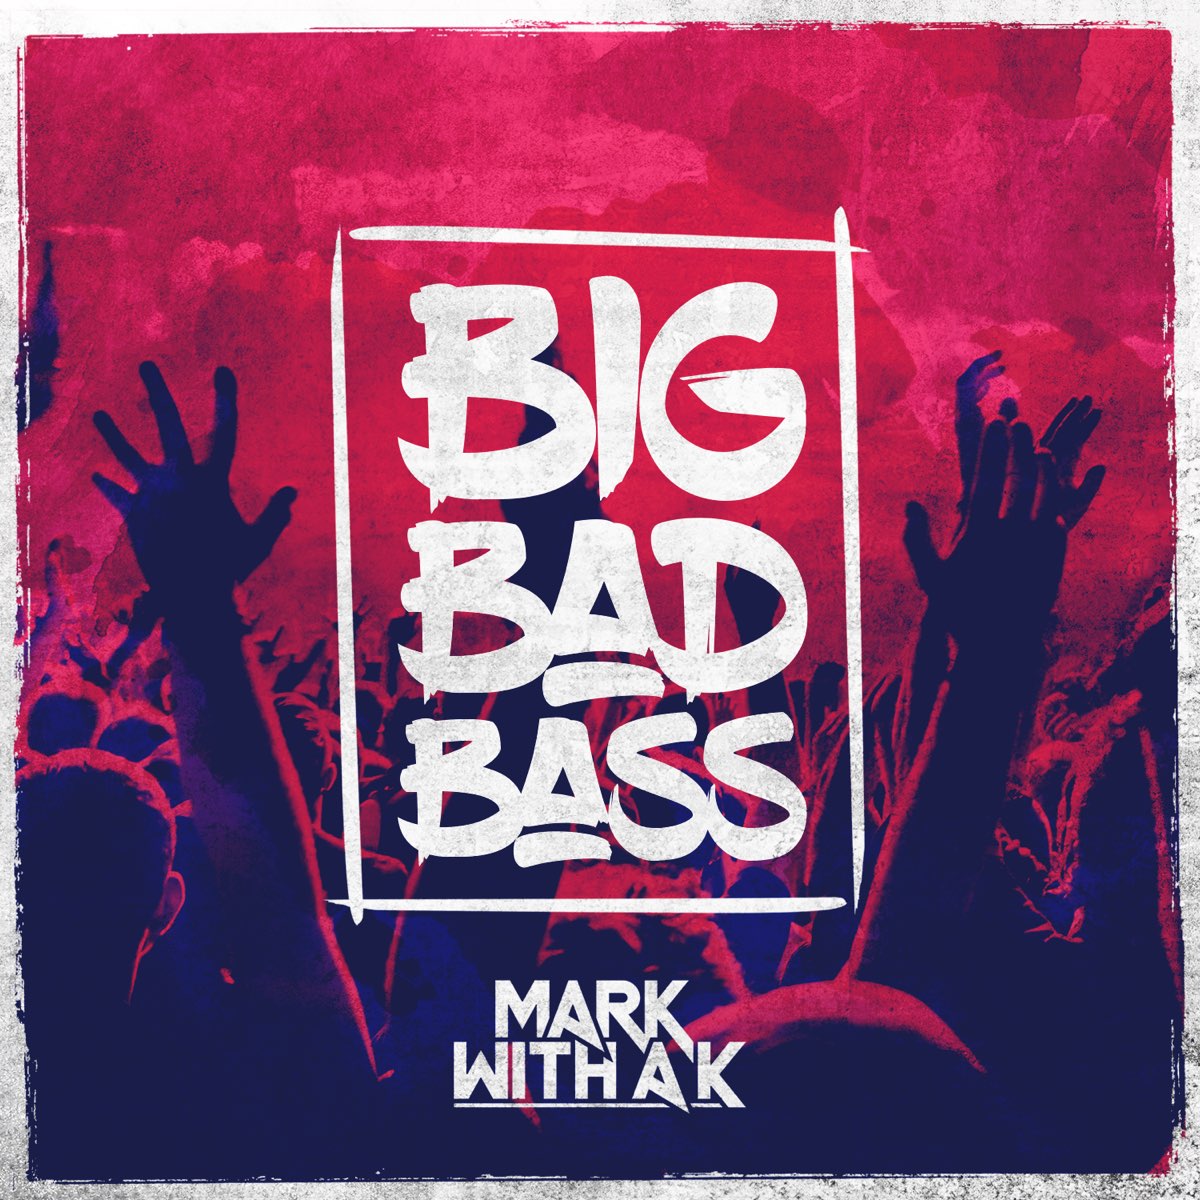 Big Bad Bass. Mark with a k - big Bad Bass. Bad Mark. Big Bad. Bass edits